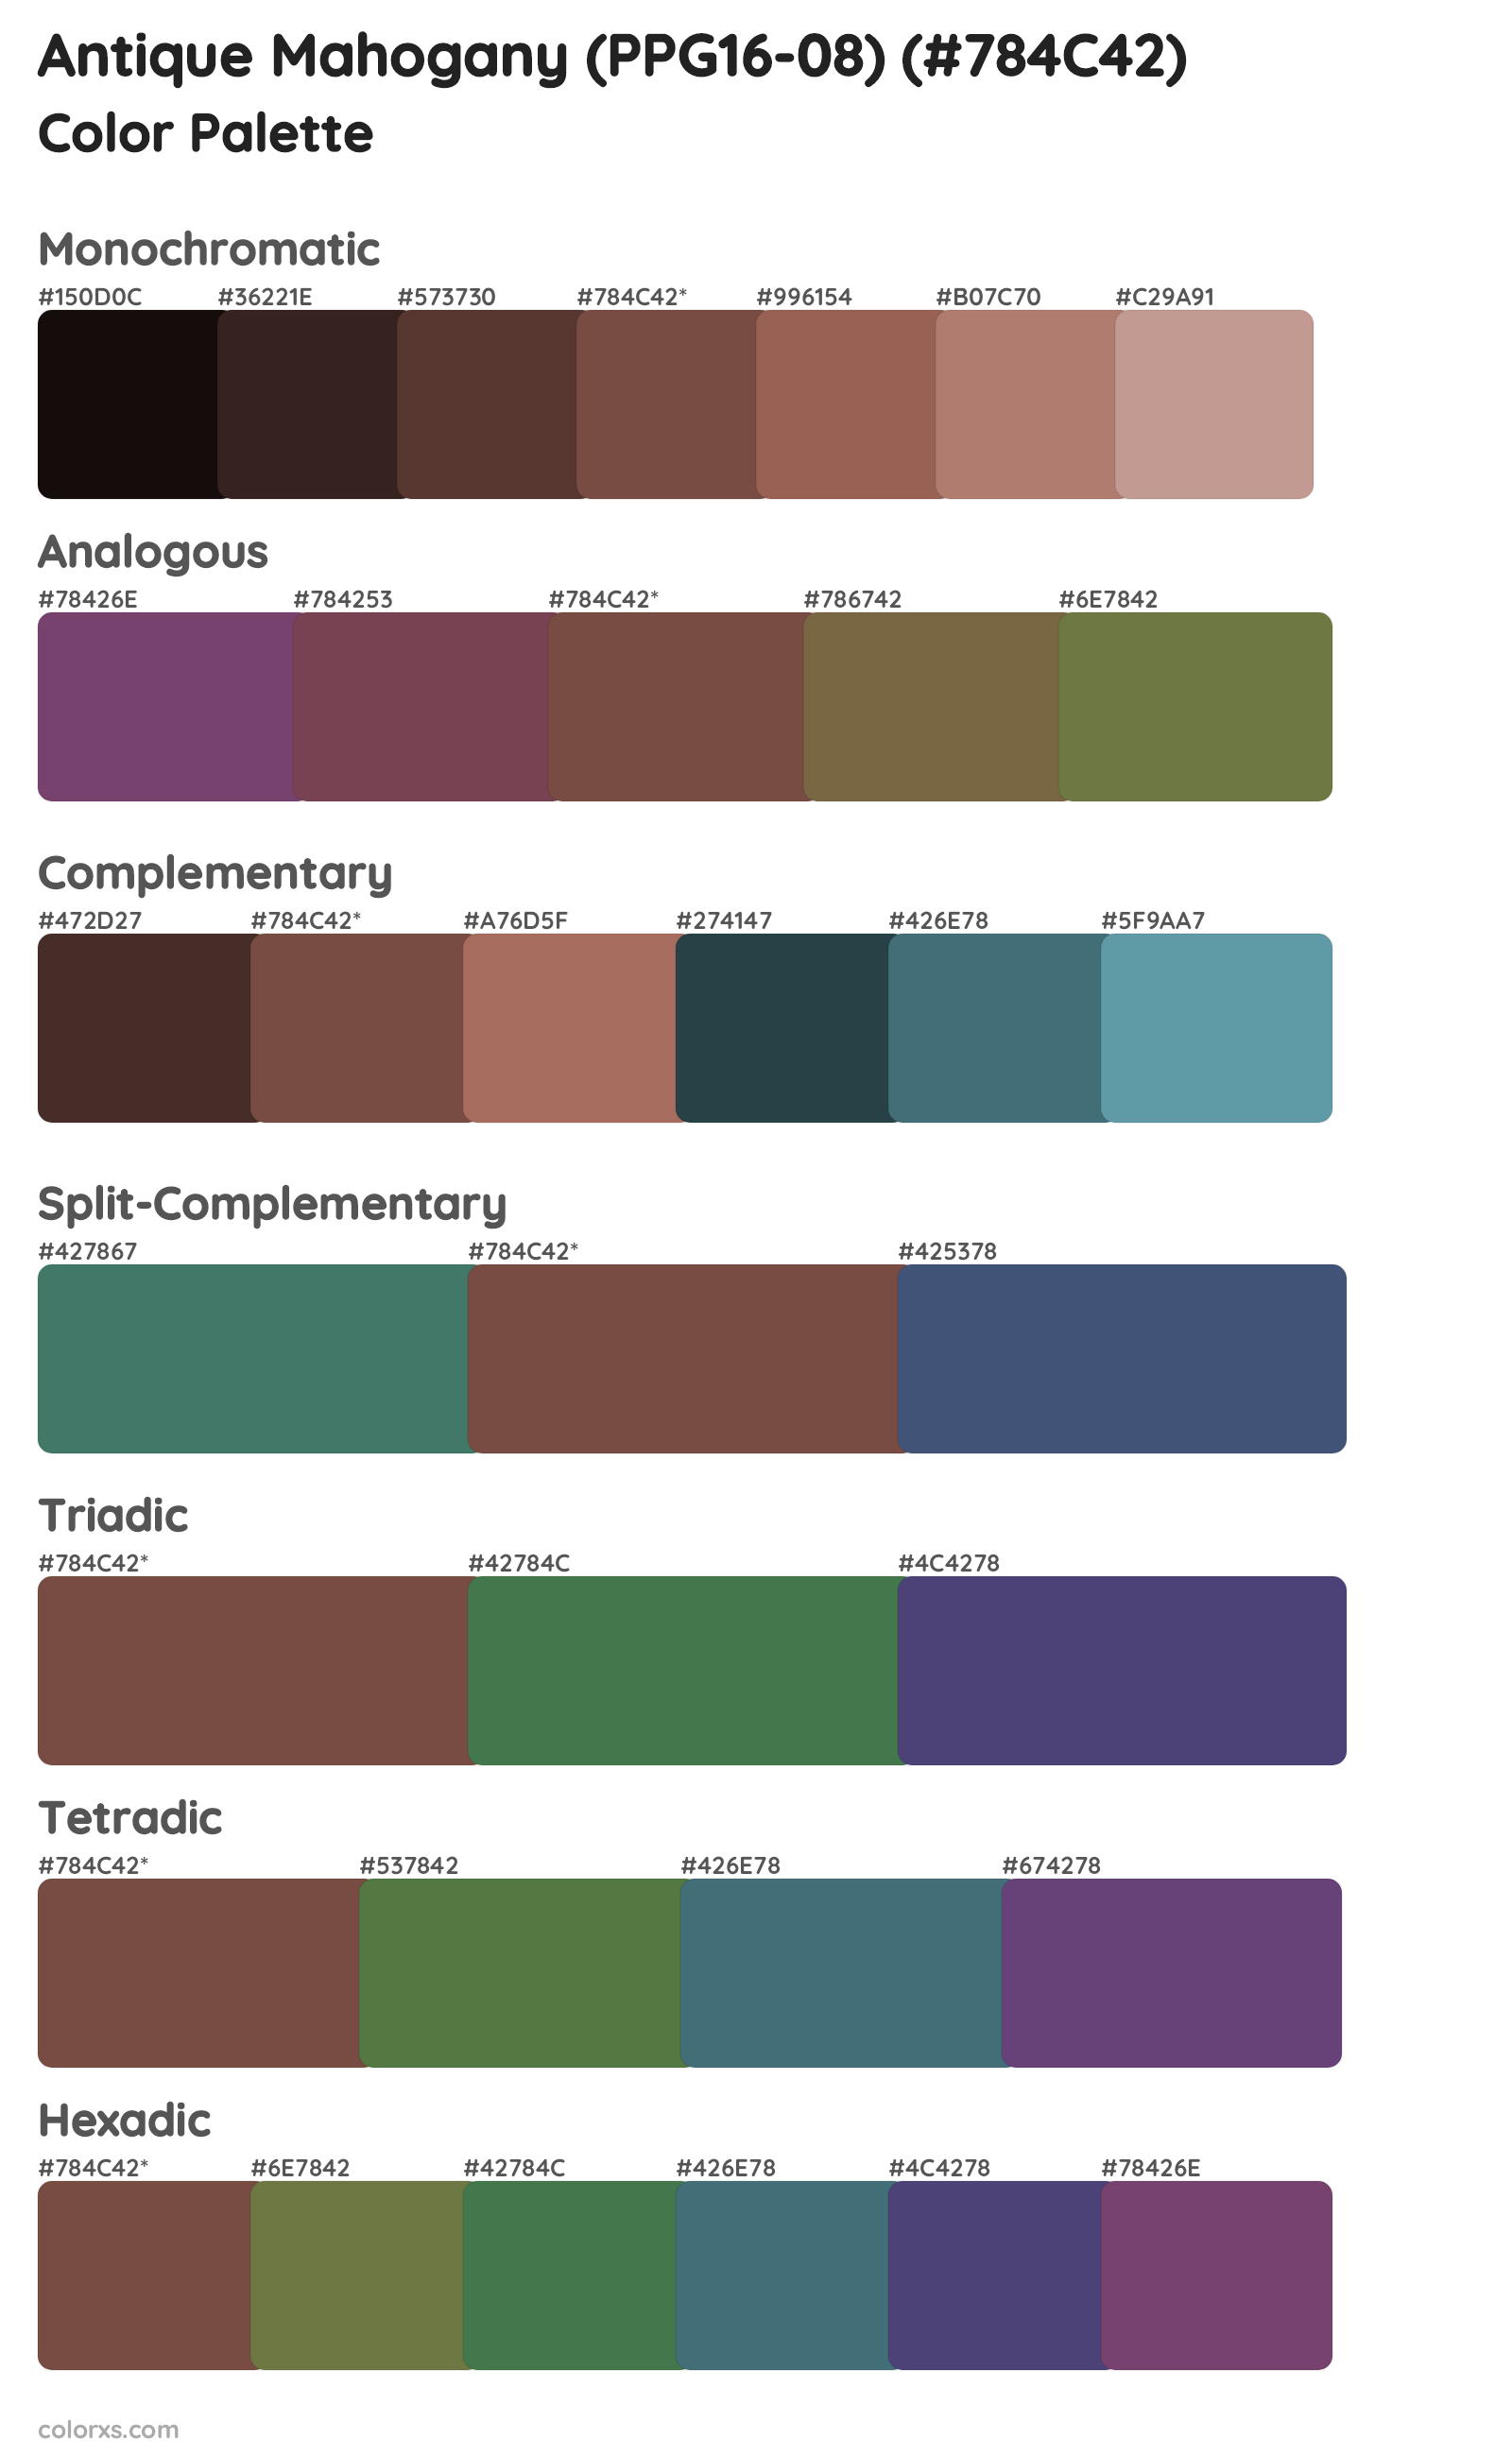 Antique Mahogany (PPG16-08) Color Scheme Palettes